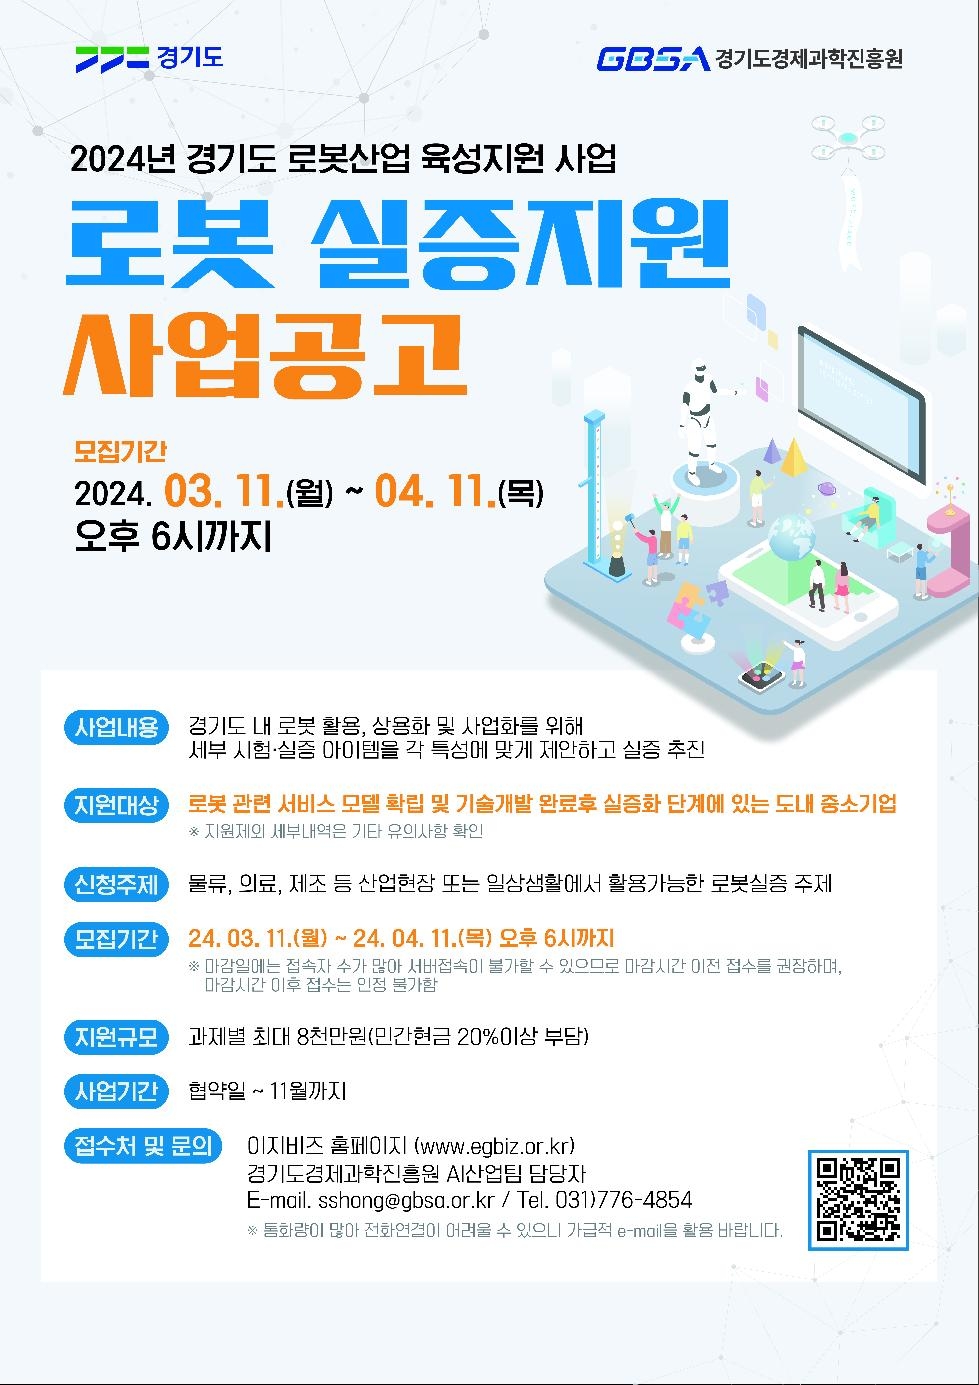 경기도, 로봇 실증 지원 사업 참여 기업 모집. 최대 8천만 원 지원